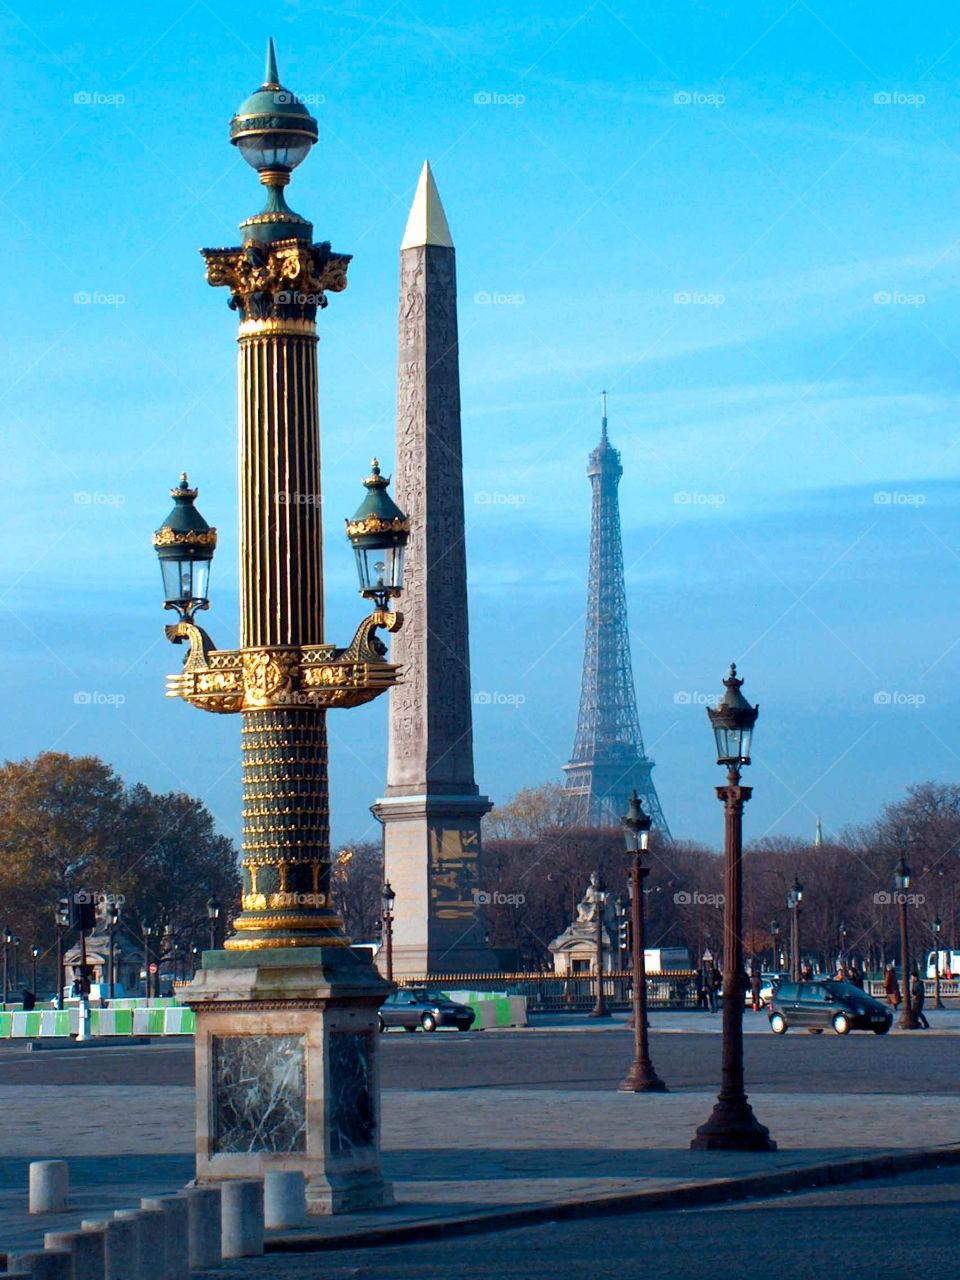 Place de la Concorde, Paris. Place de la Concorde withe the Eiffel Tower, Paris